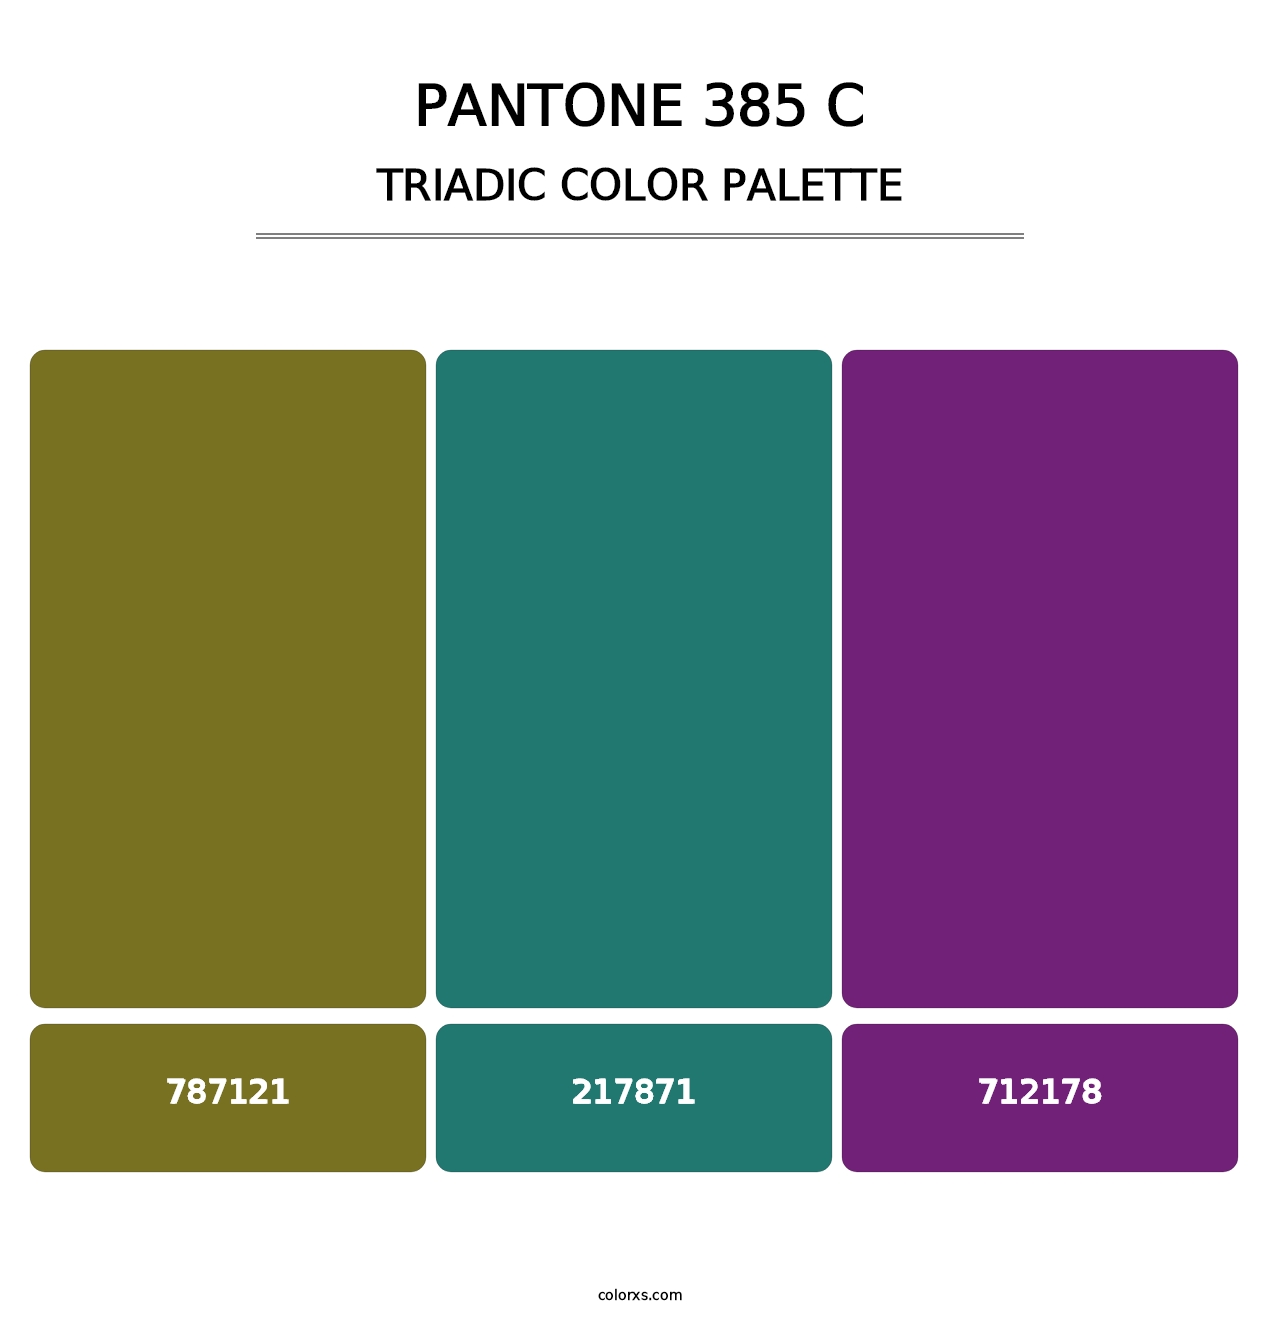 PANTONE 385 C - Triadic Color Palette